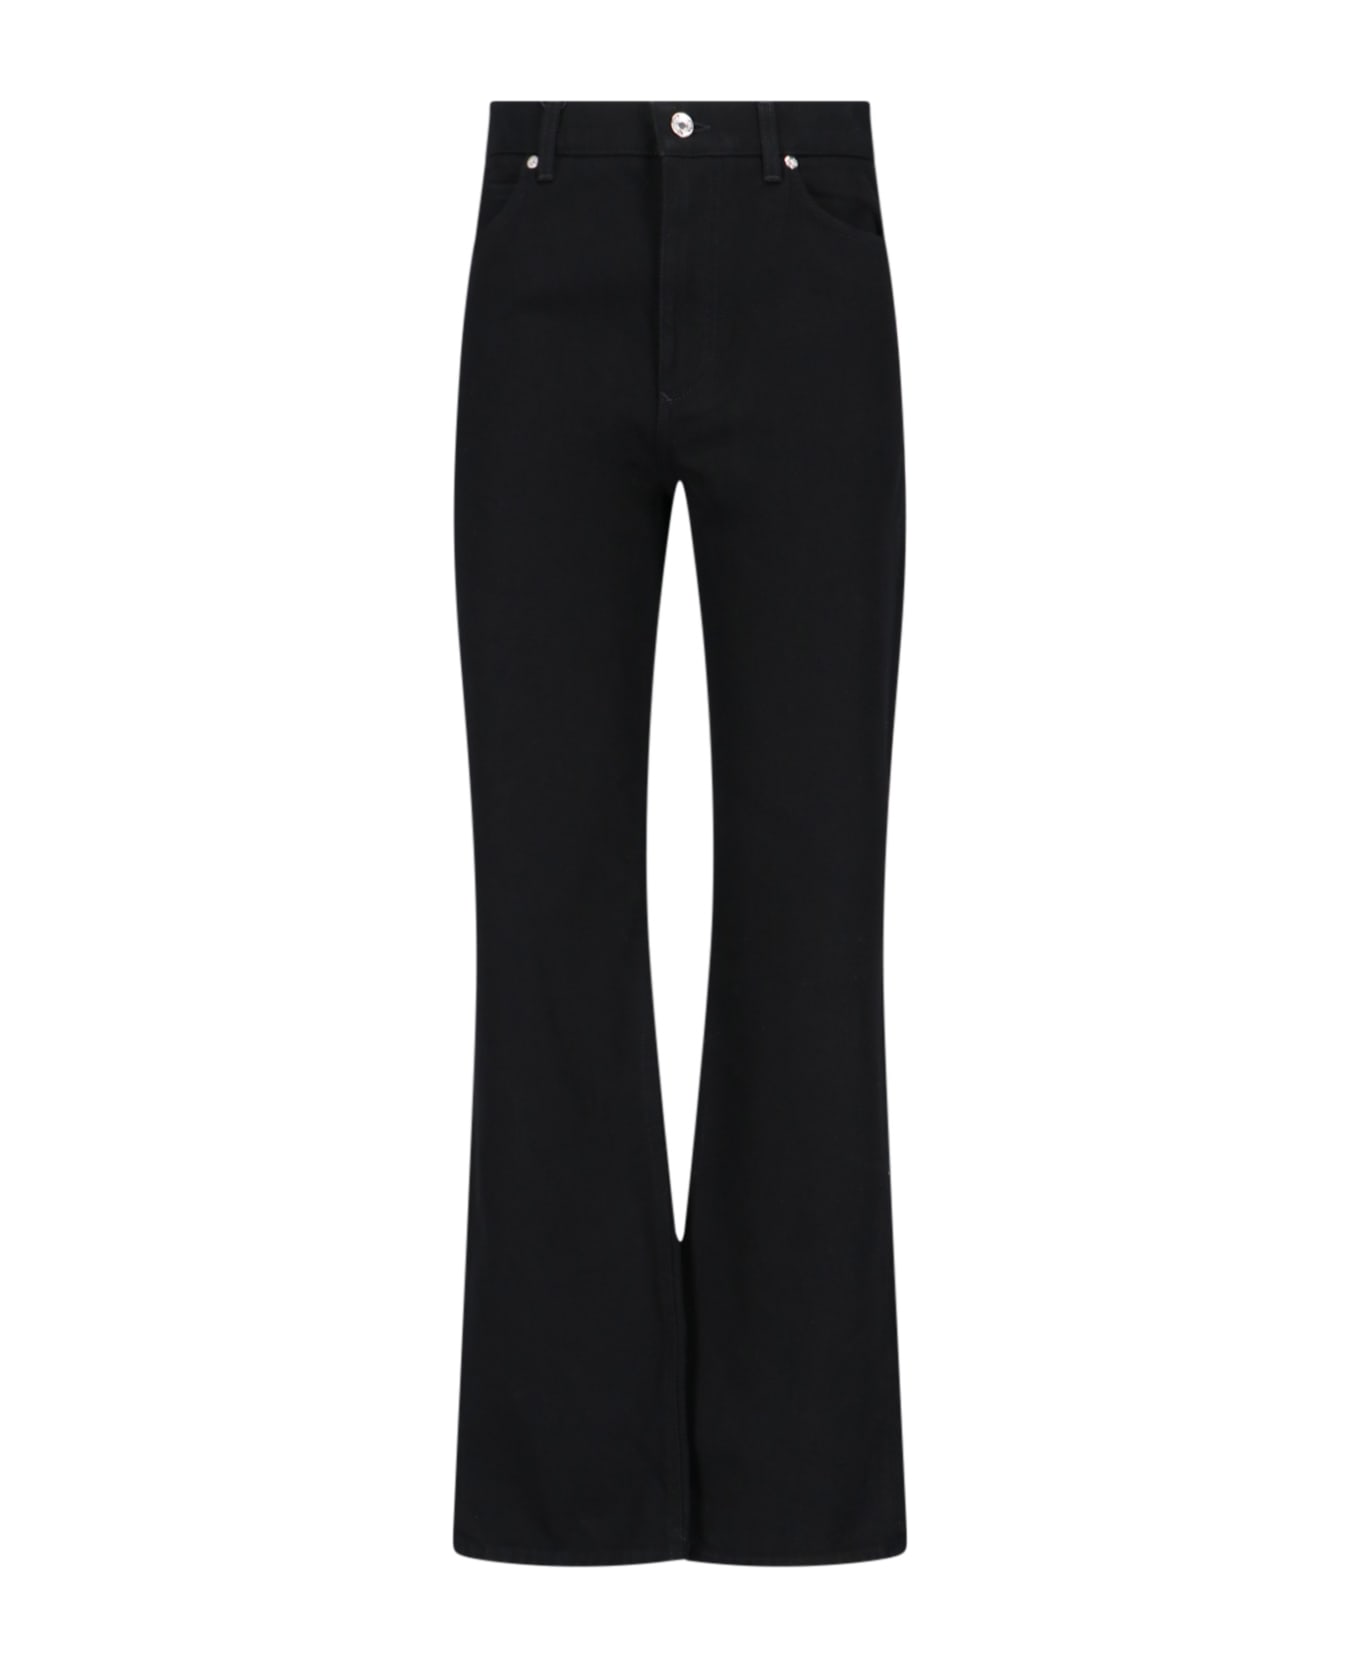 Dolce & Gabbana Bootcut Jeans - Black  